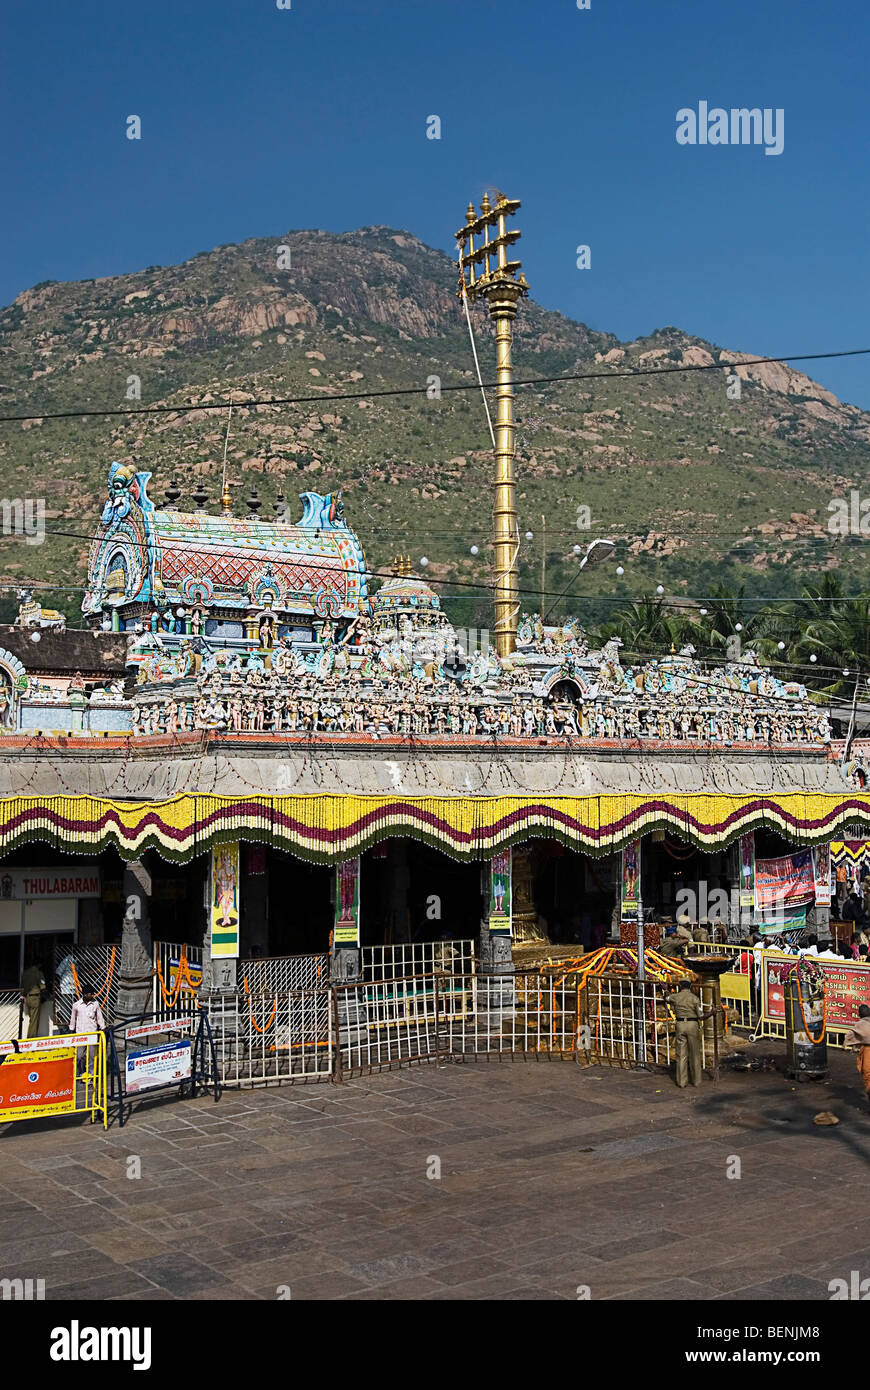 Der Arunachaleshwara-Tempel, erbaut zwischen dem 9. und 13. Jahrhundert ist ein Hindu-Tempel gewidmet Lord Shiva befindet sich in der Stockfoto